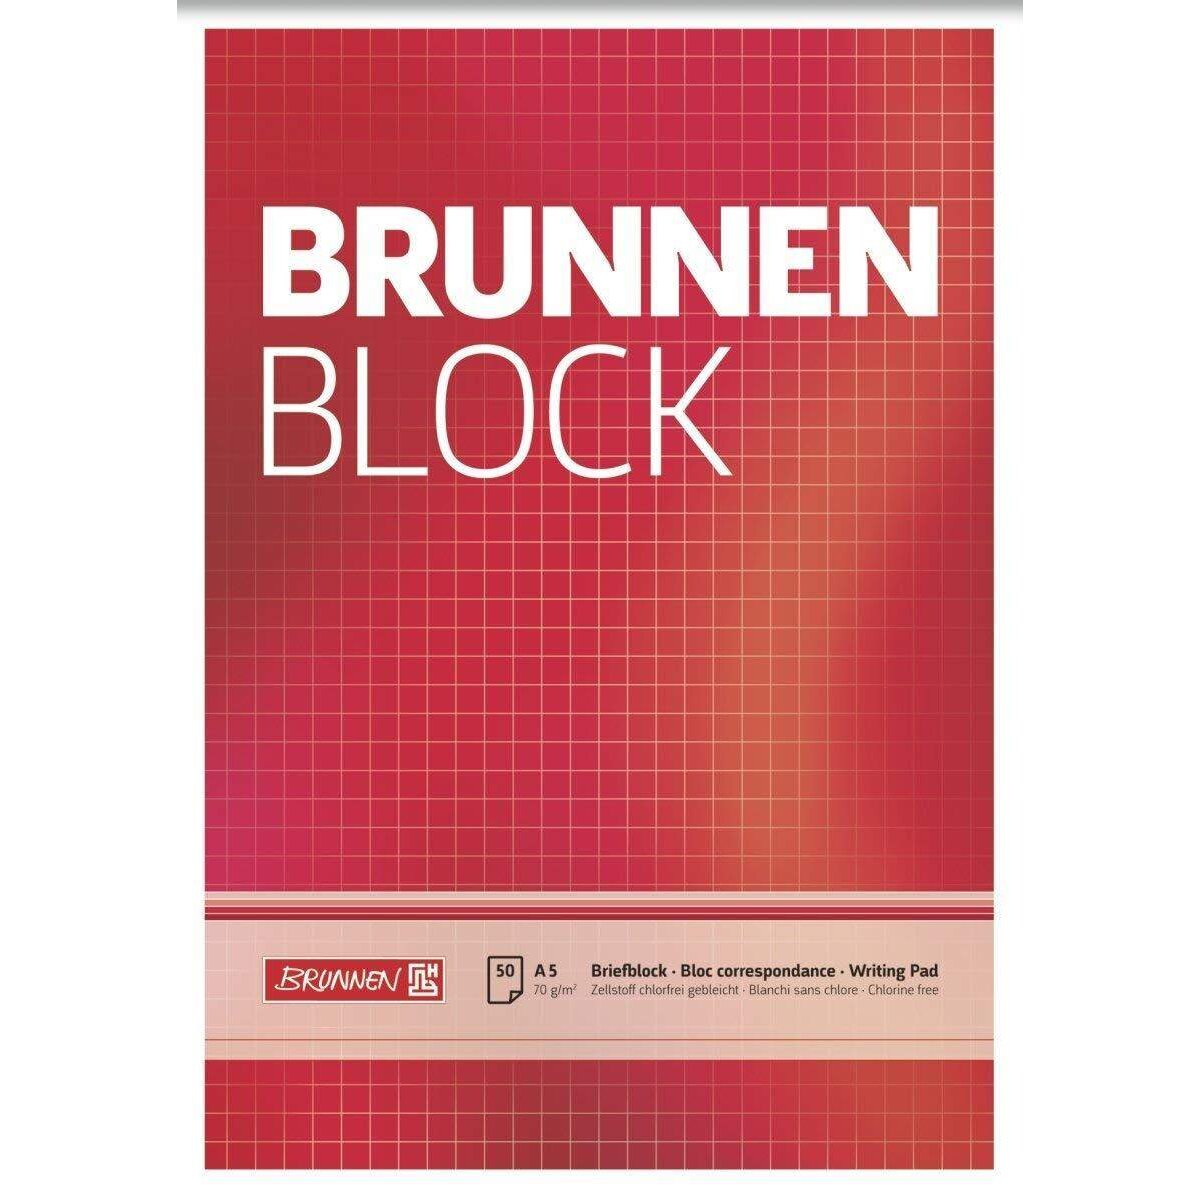 BRUNNEN Block A5, 50 Blatt, kariert